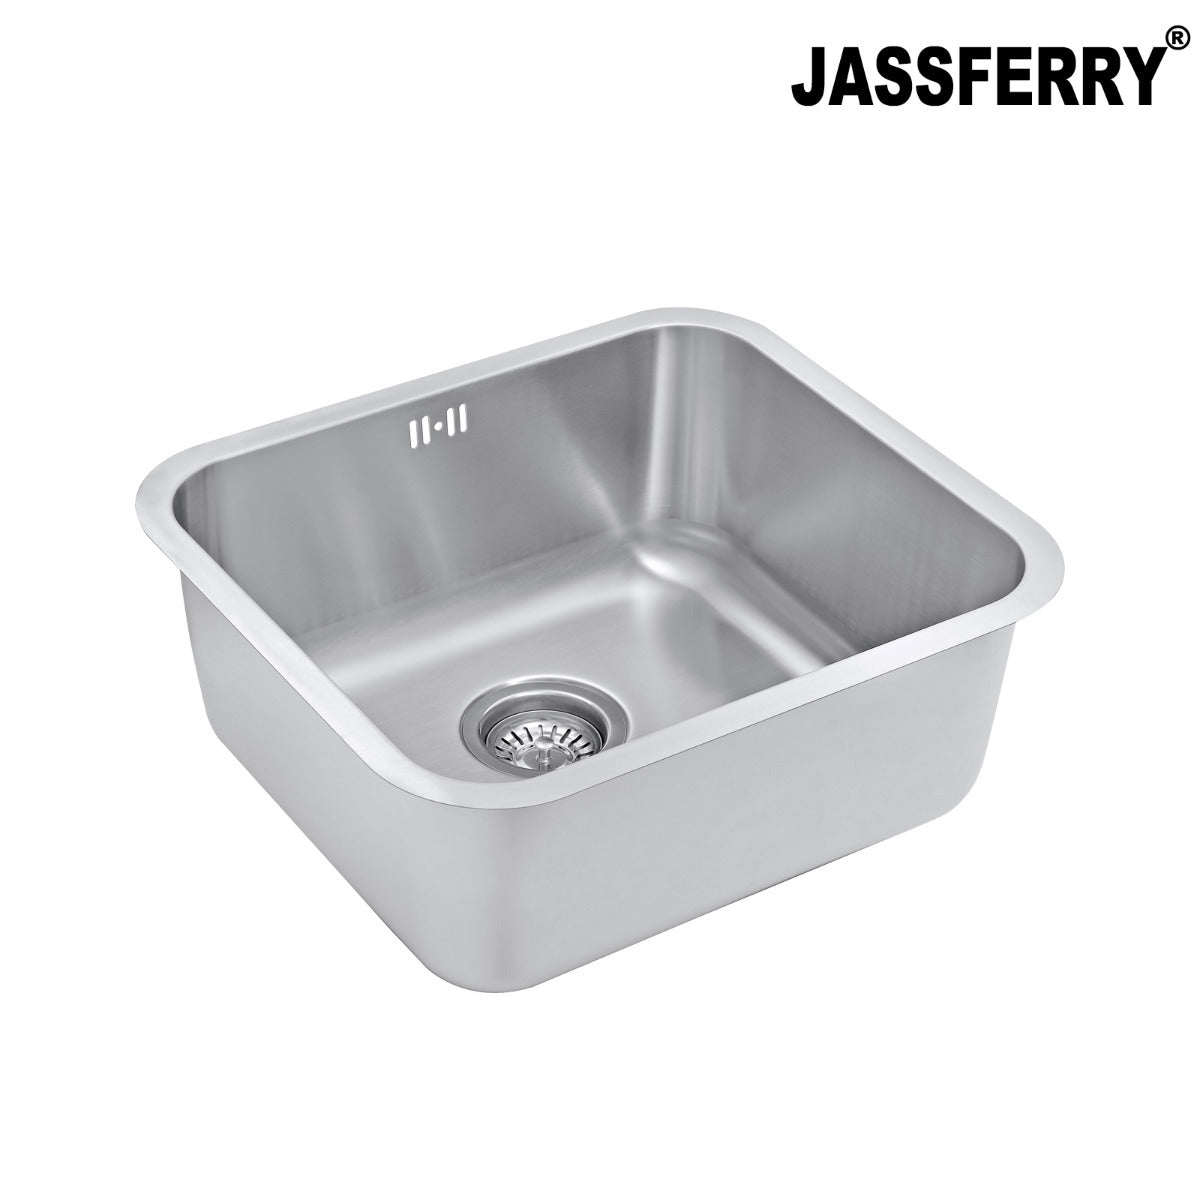 JassferryJASSFERRY 500 x 450 MM Undermount Stainless Steel Kitchen Sink Single 1.0 Bowl - 621Kitchen Sinks